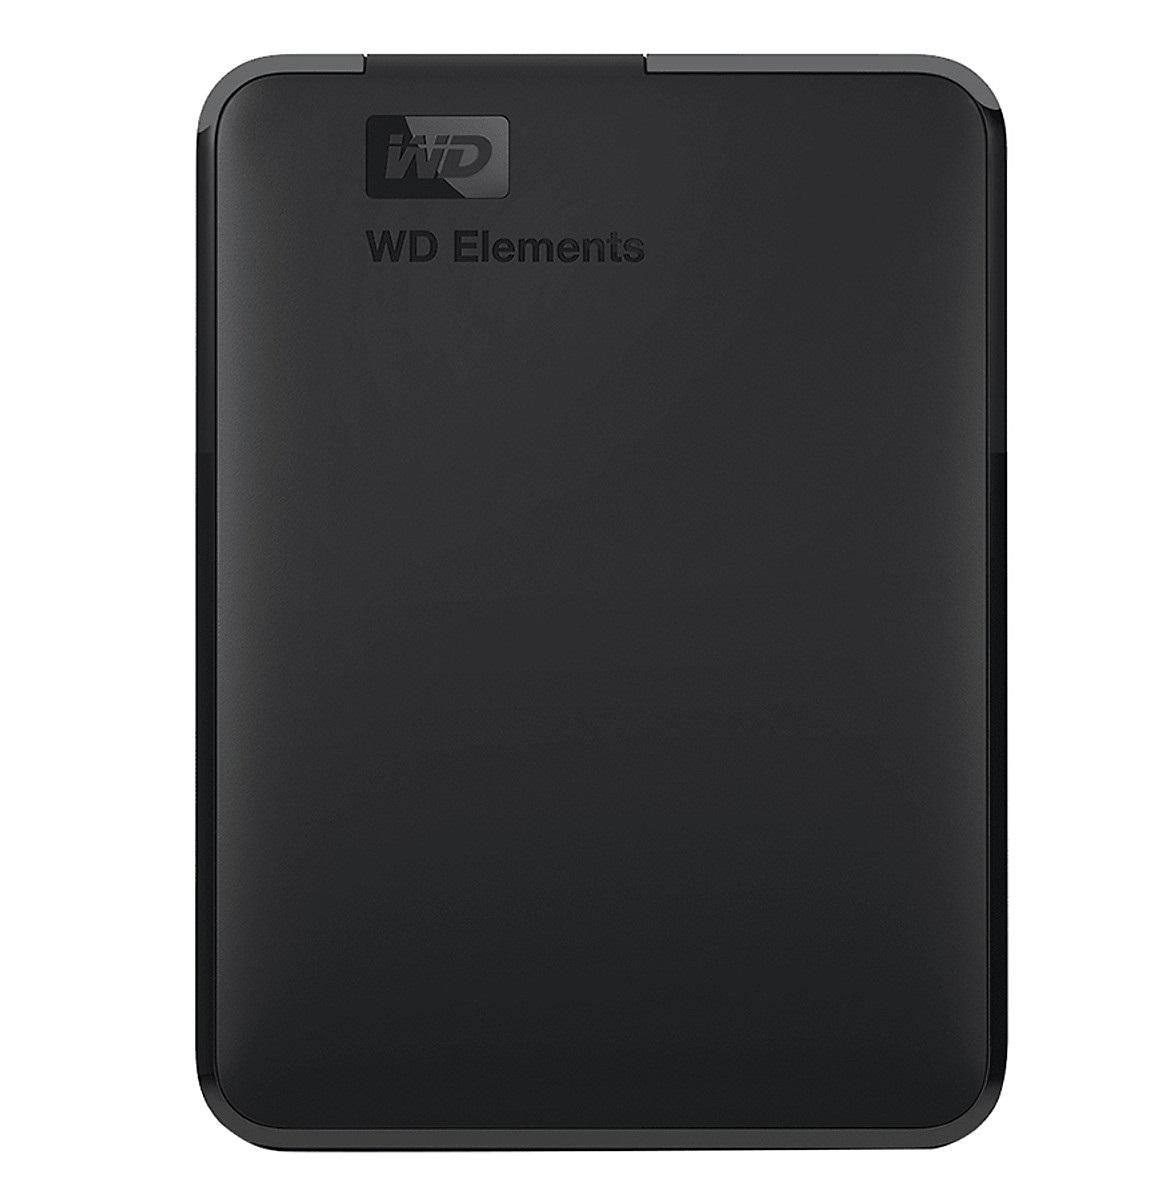 Hộp box đựng ổ cứng laptop 2.5inch WD Elements chính hãng  - Chuẩn USB 3.0